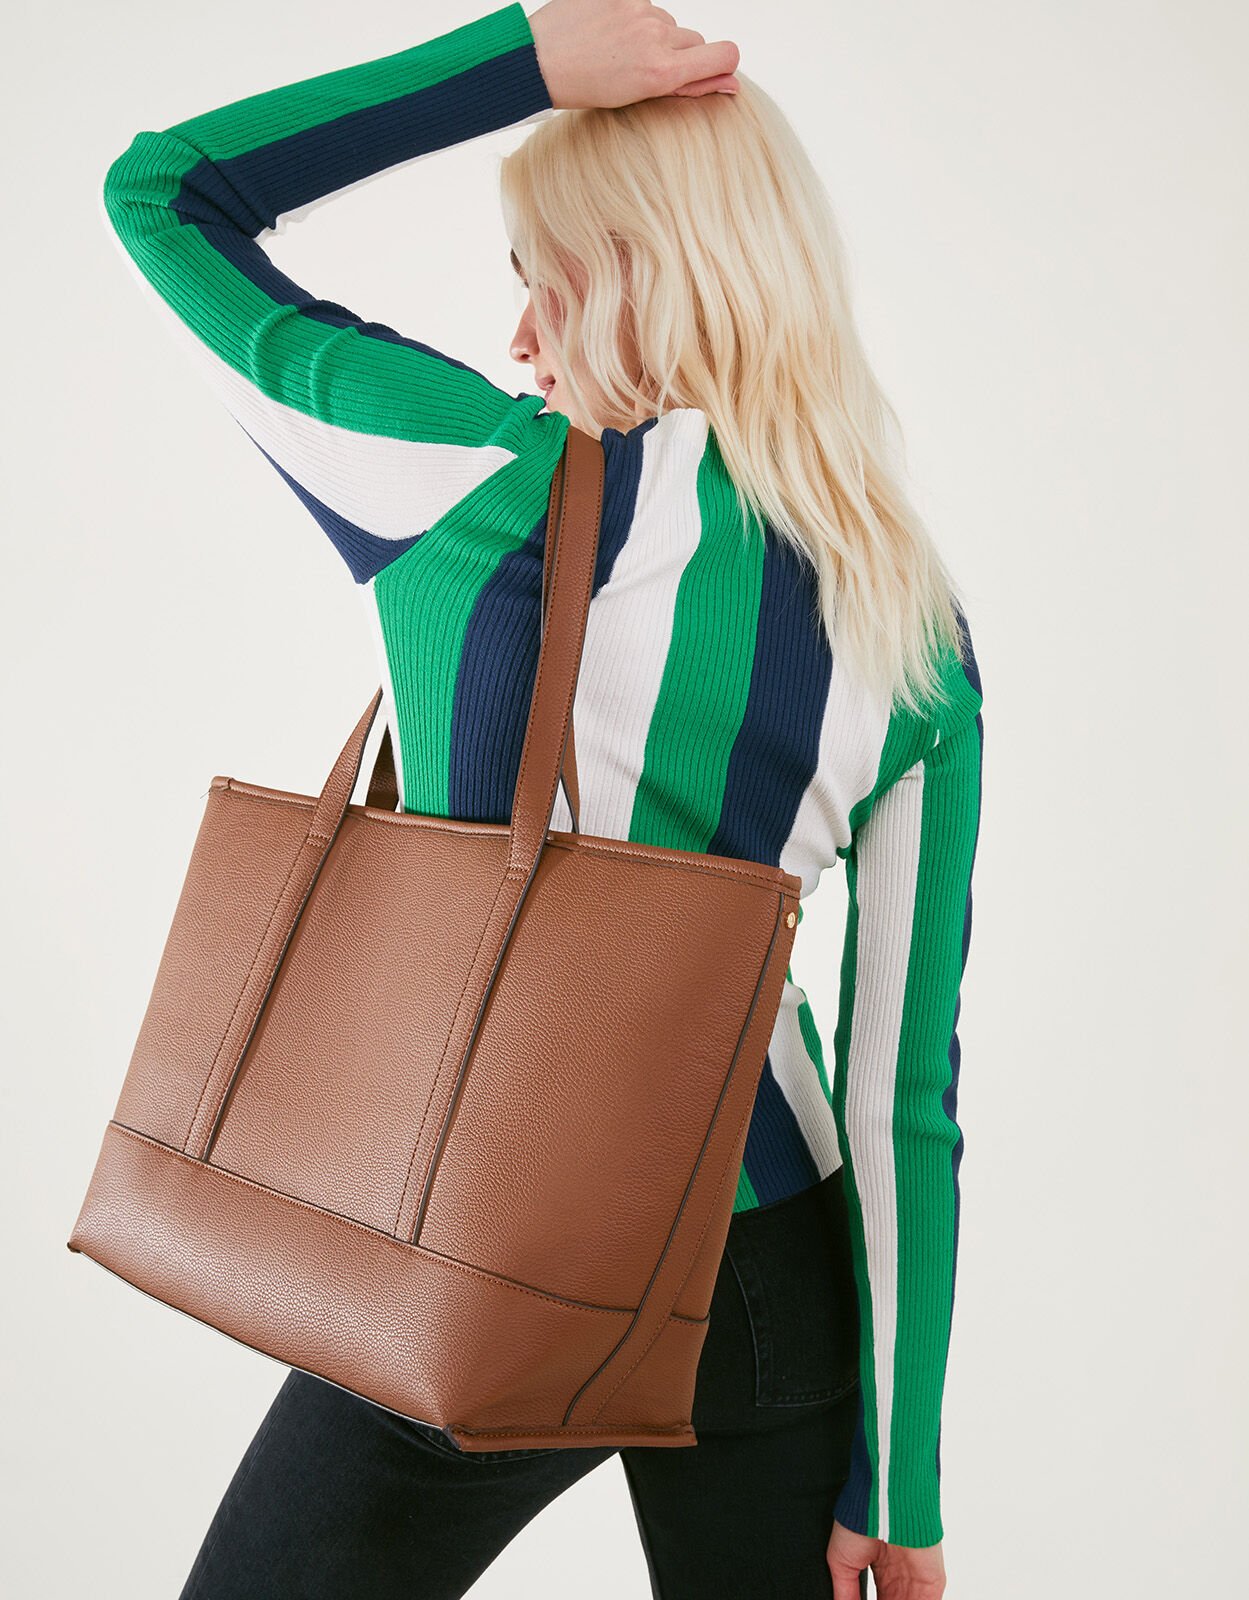 Buy Vintage Genuine Leather Tote Bag Handbag Shopper Purse Shoulder Bag for  Women Office Laptop Bag Brown Large at Amazonin